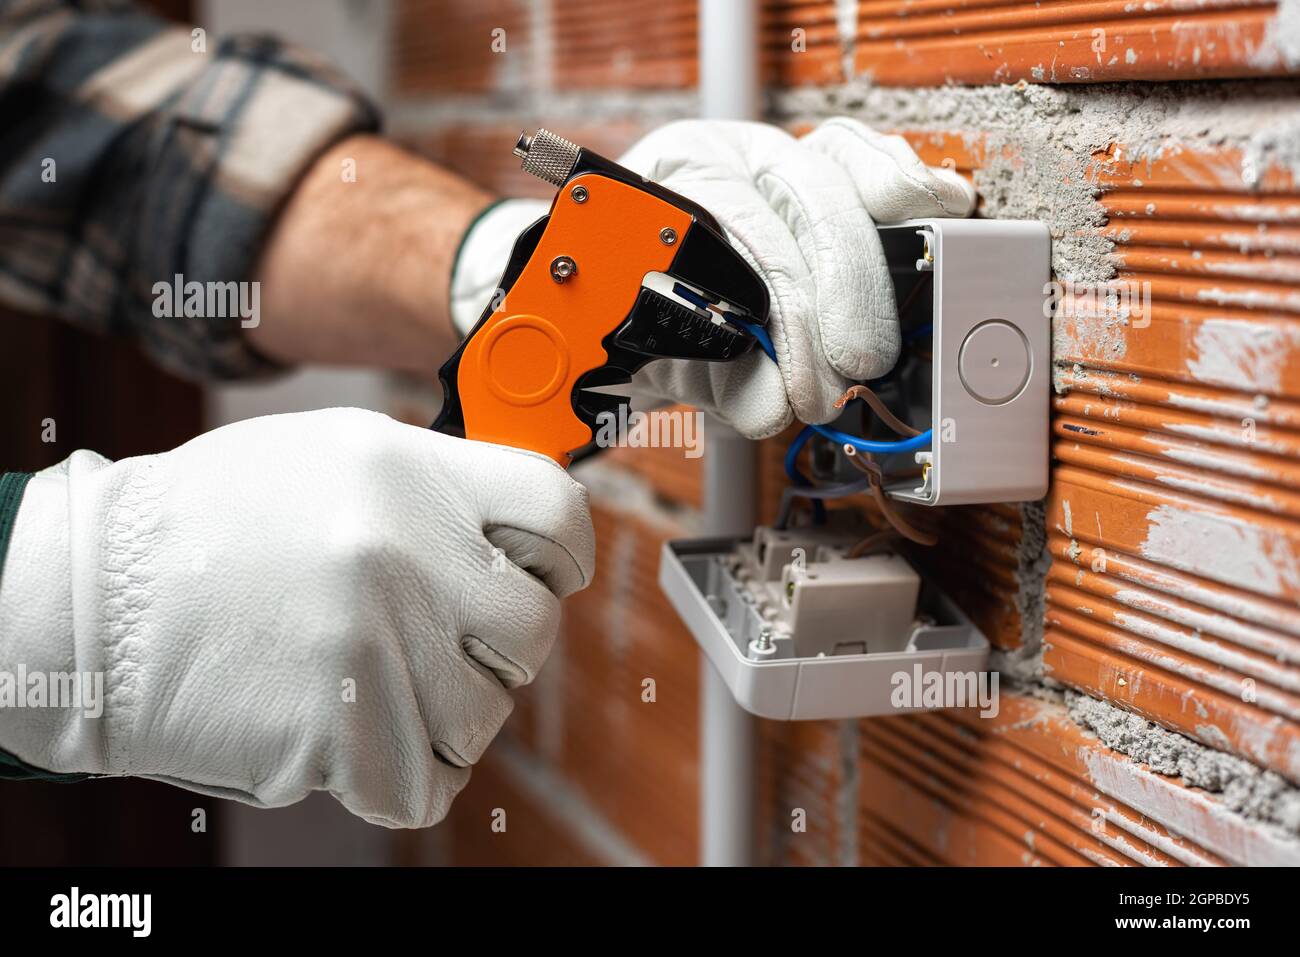 Elektriker Arbeiter bei der Arbeit mit Abisolierer bereitet die elektrischen Kabel der häuslichen elektrischen Anlage. Bauindustrie. Stockfoto